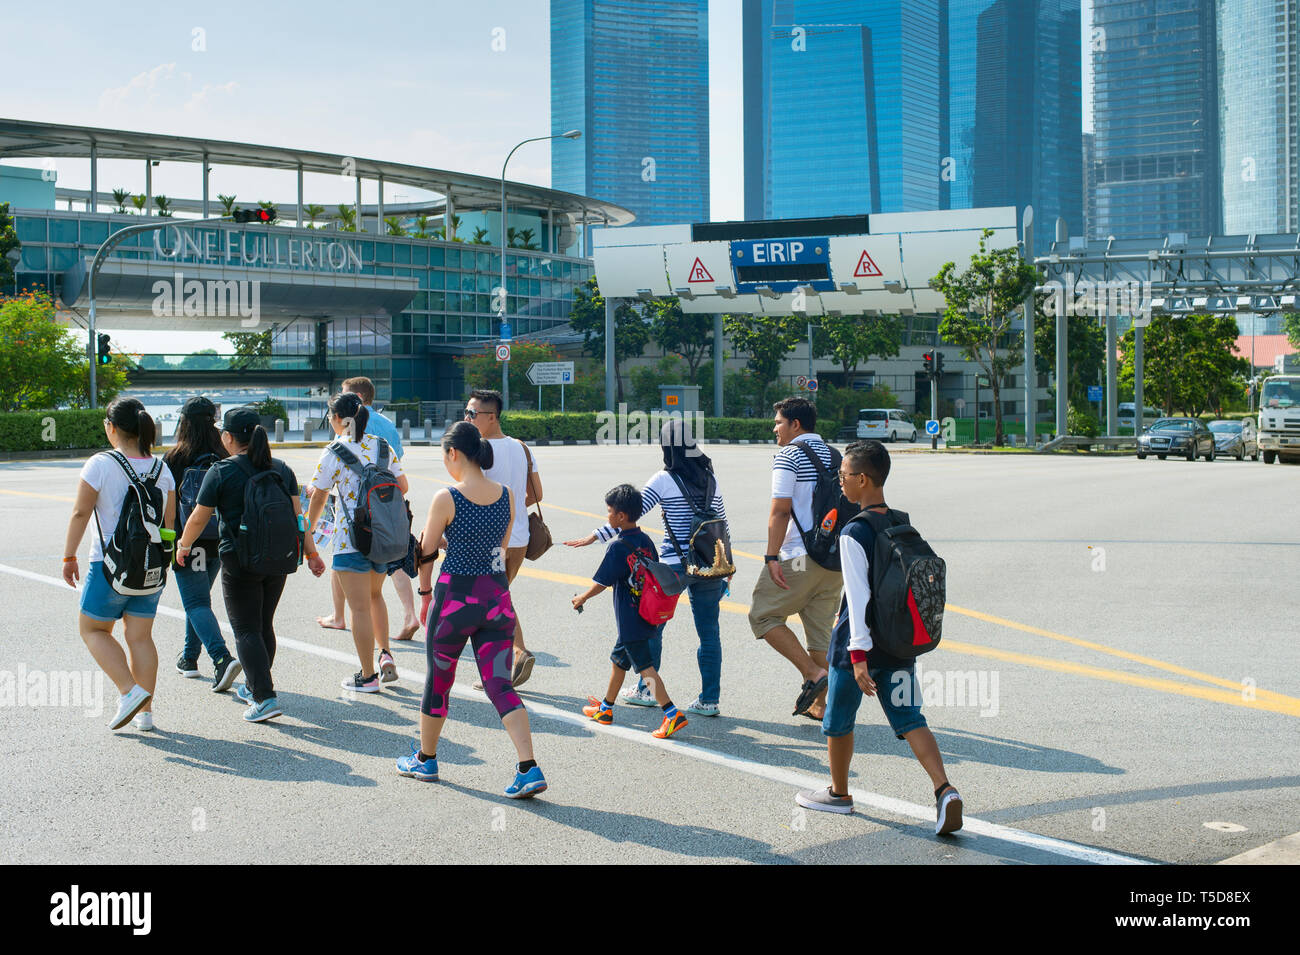 Singapour - 15 janvier 2017 : Les personnes qui traversent la route à Singapour. Singapour est un commerce mondial, la finance et le transport hub Banque D'Images